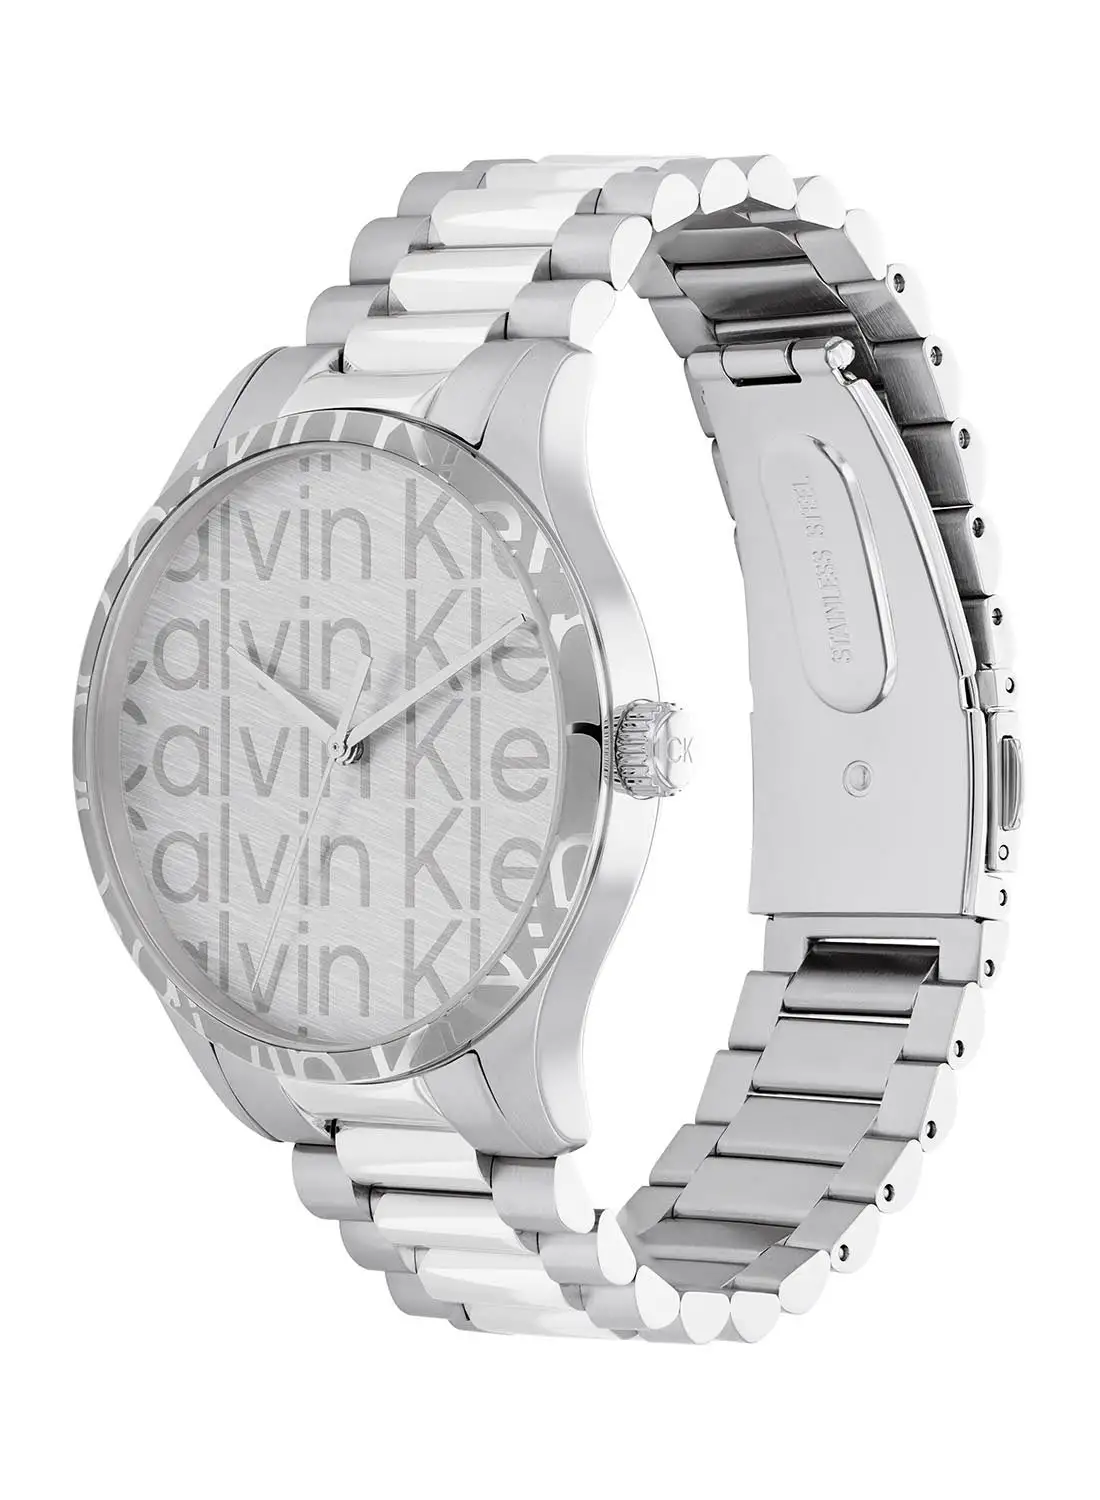 CALVIN KLEIN Unisex Analog Round Shape Stainless Steel Wrist Watch 25200342 - 42 Mm